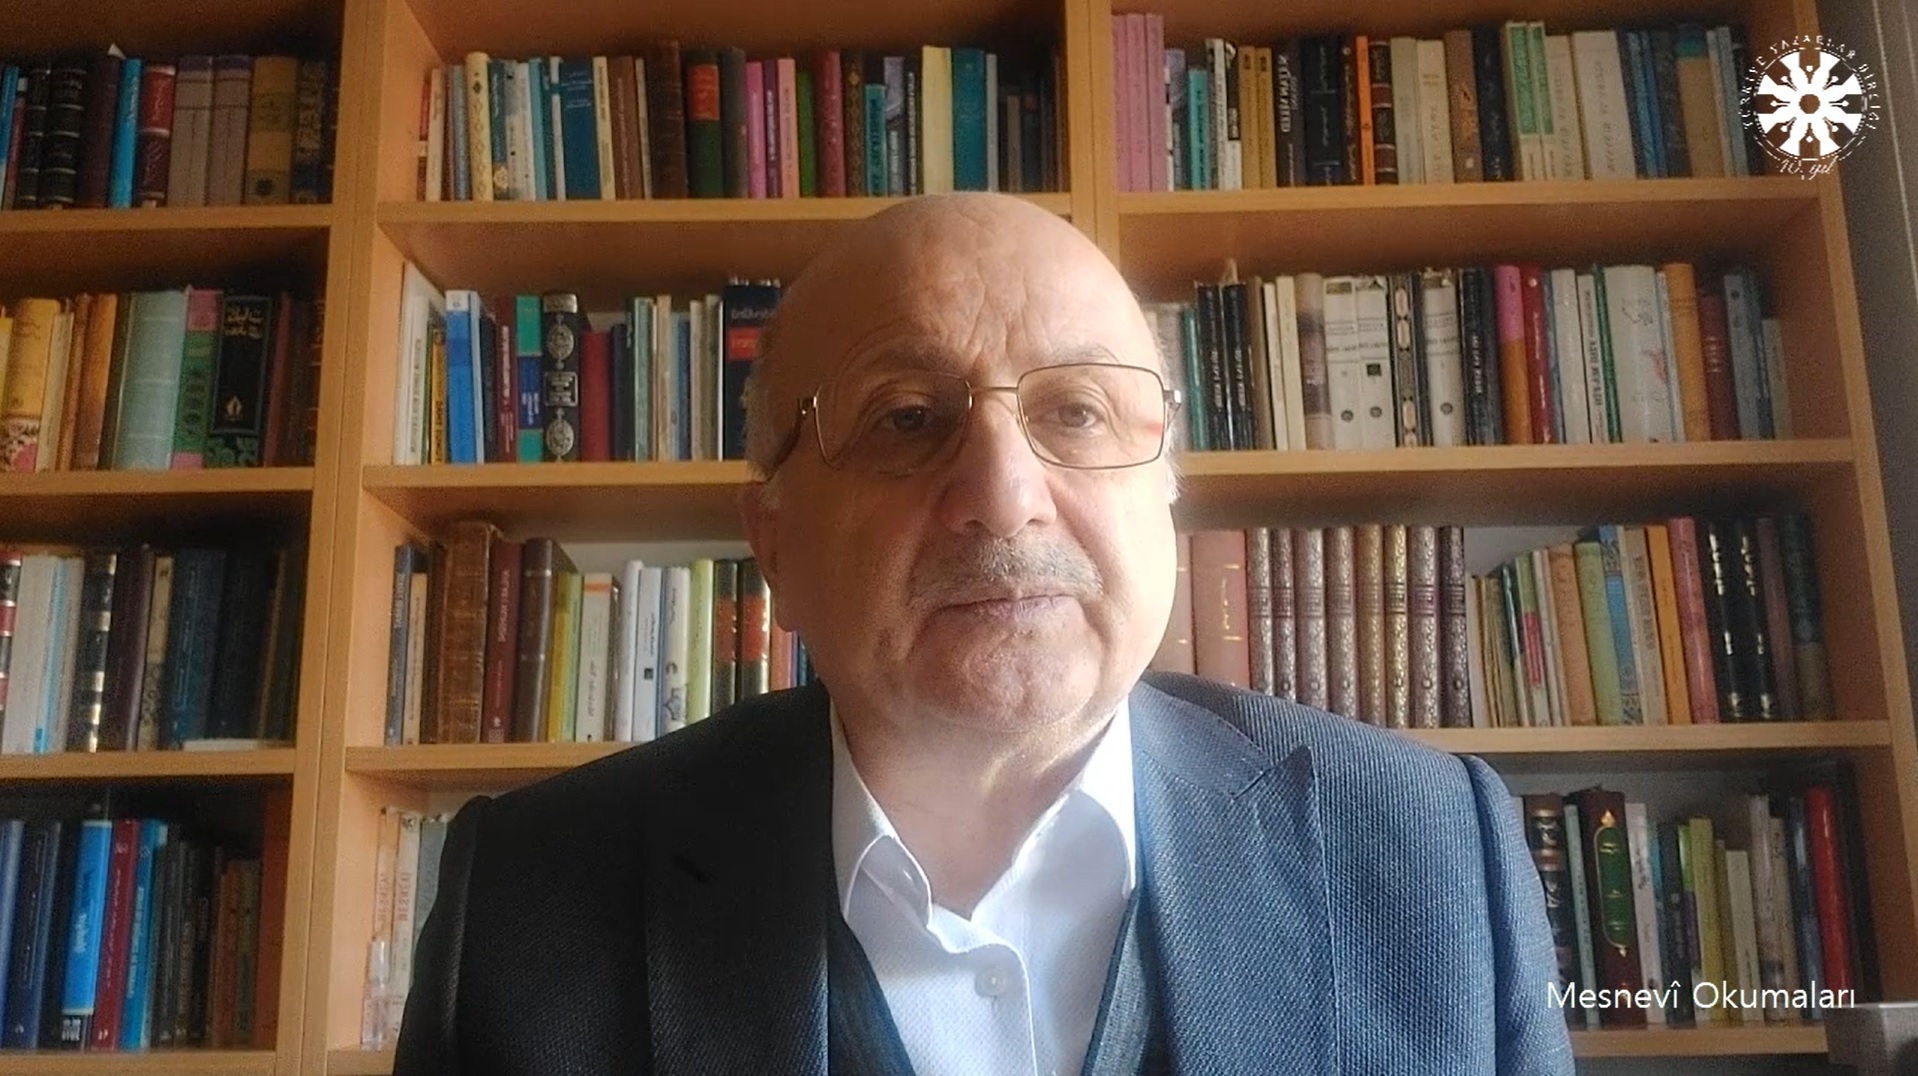 Mesnevî Okumaları -131- Prof. Dr. Adnan Karaismailoğlu